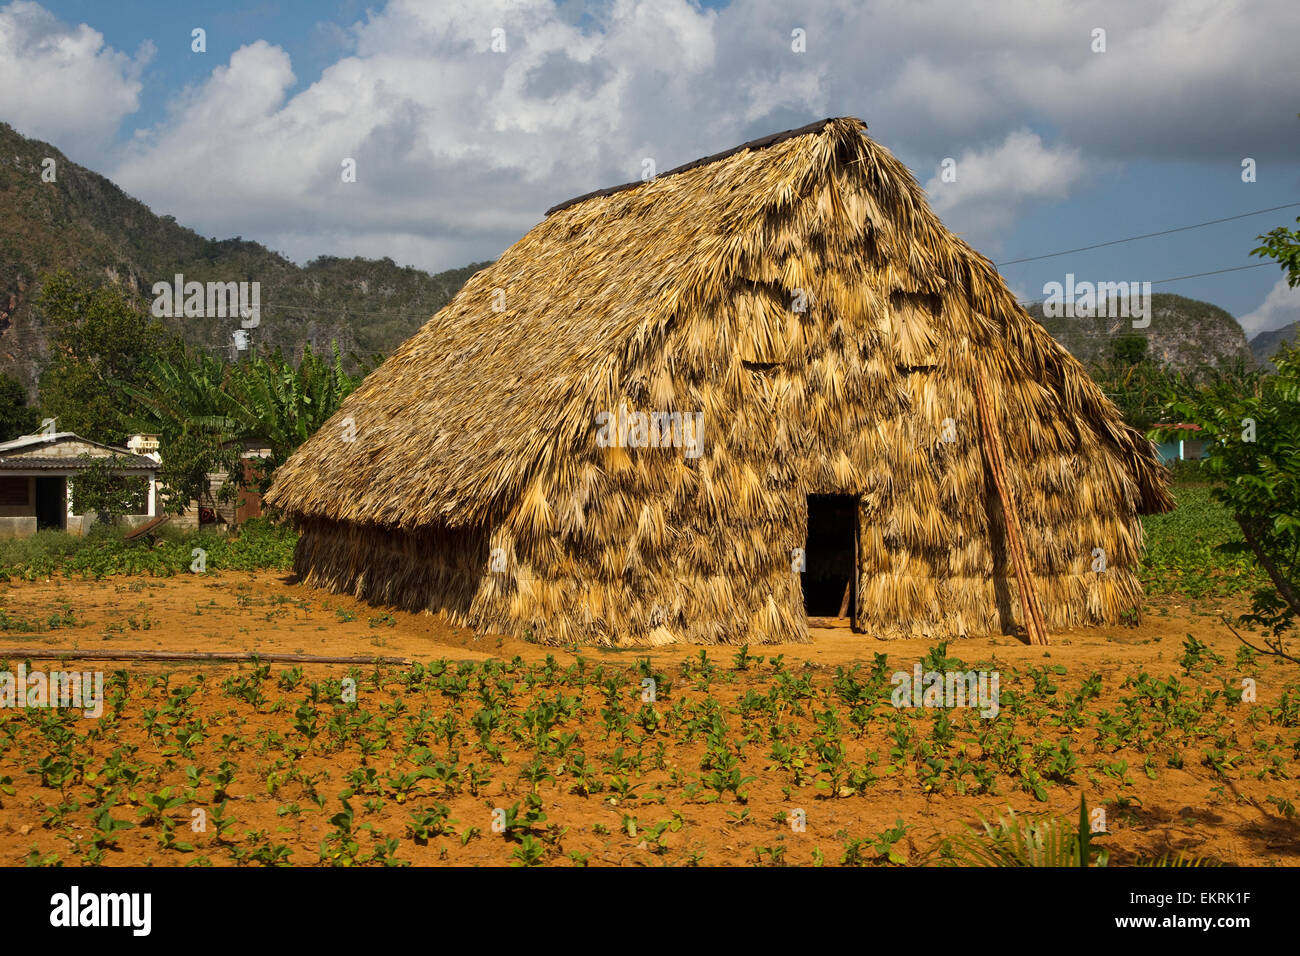 Une maison de tabac dans les terres agricoles dans la région de Vinales, Cuba avec les cultures et les plantations de tabac Banque D'Images